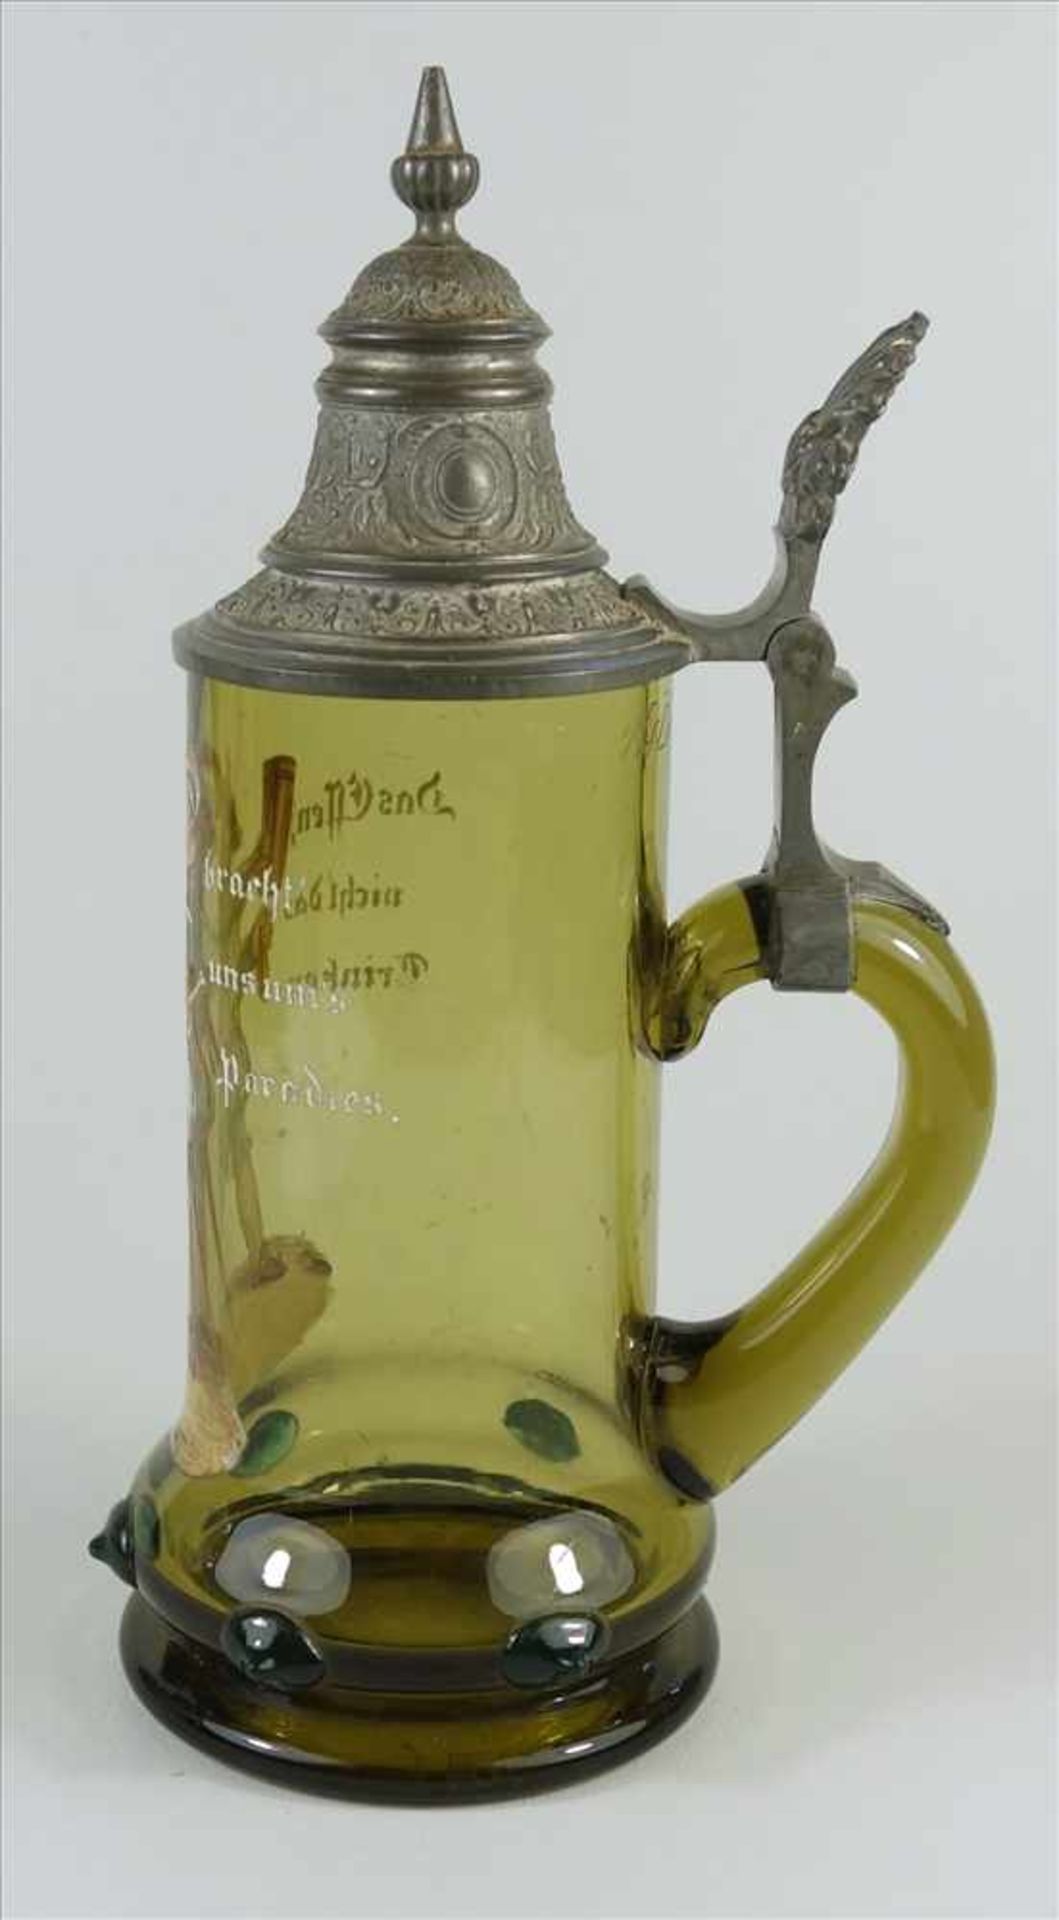 Historismus- Bierkrug mit Nuppen und Emaillmalerei, um 1890, grün-braunes Glas, aufgeschmolzene - Bild 2 aus 2